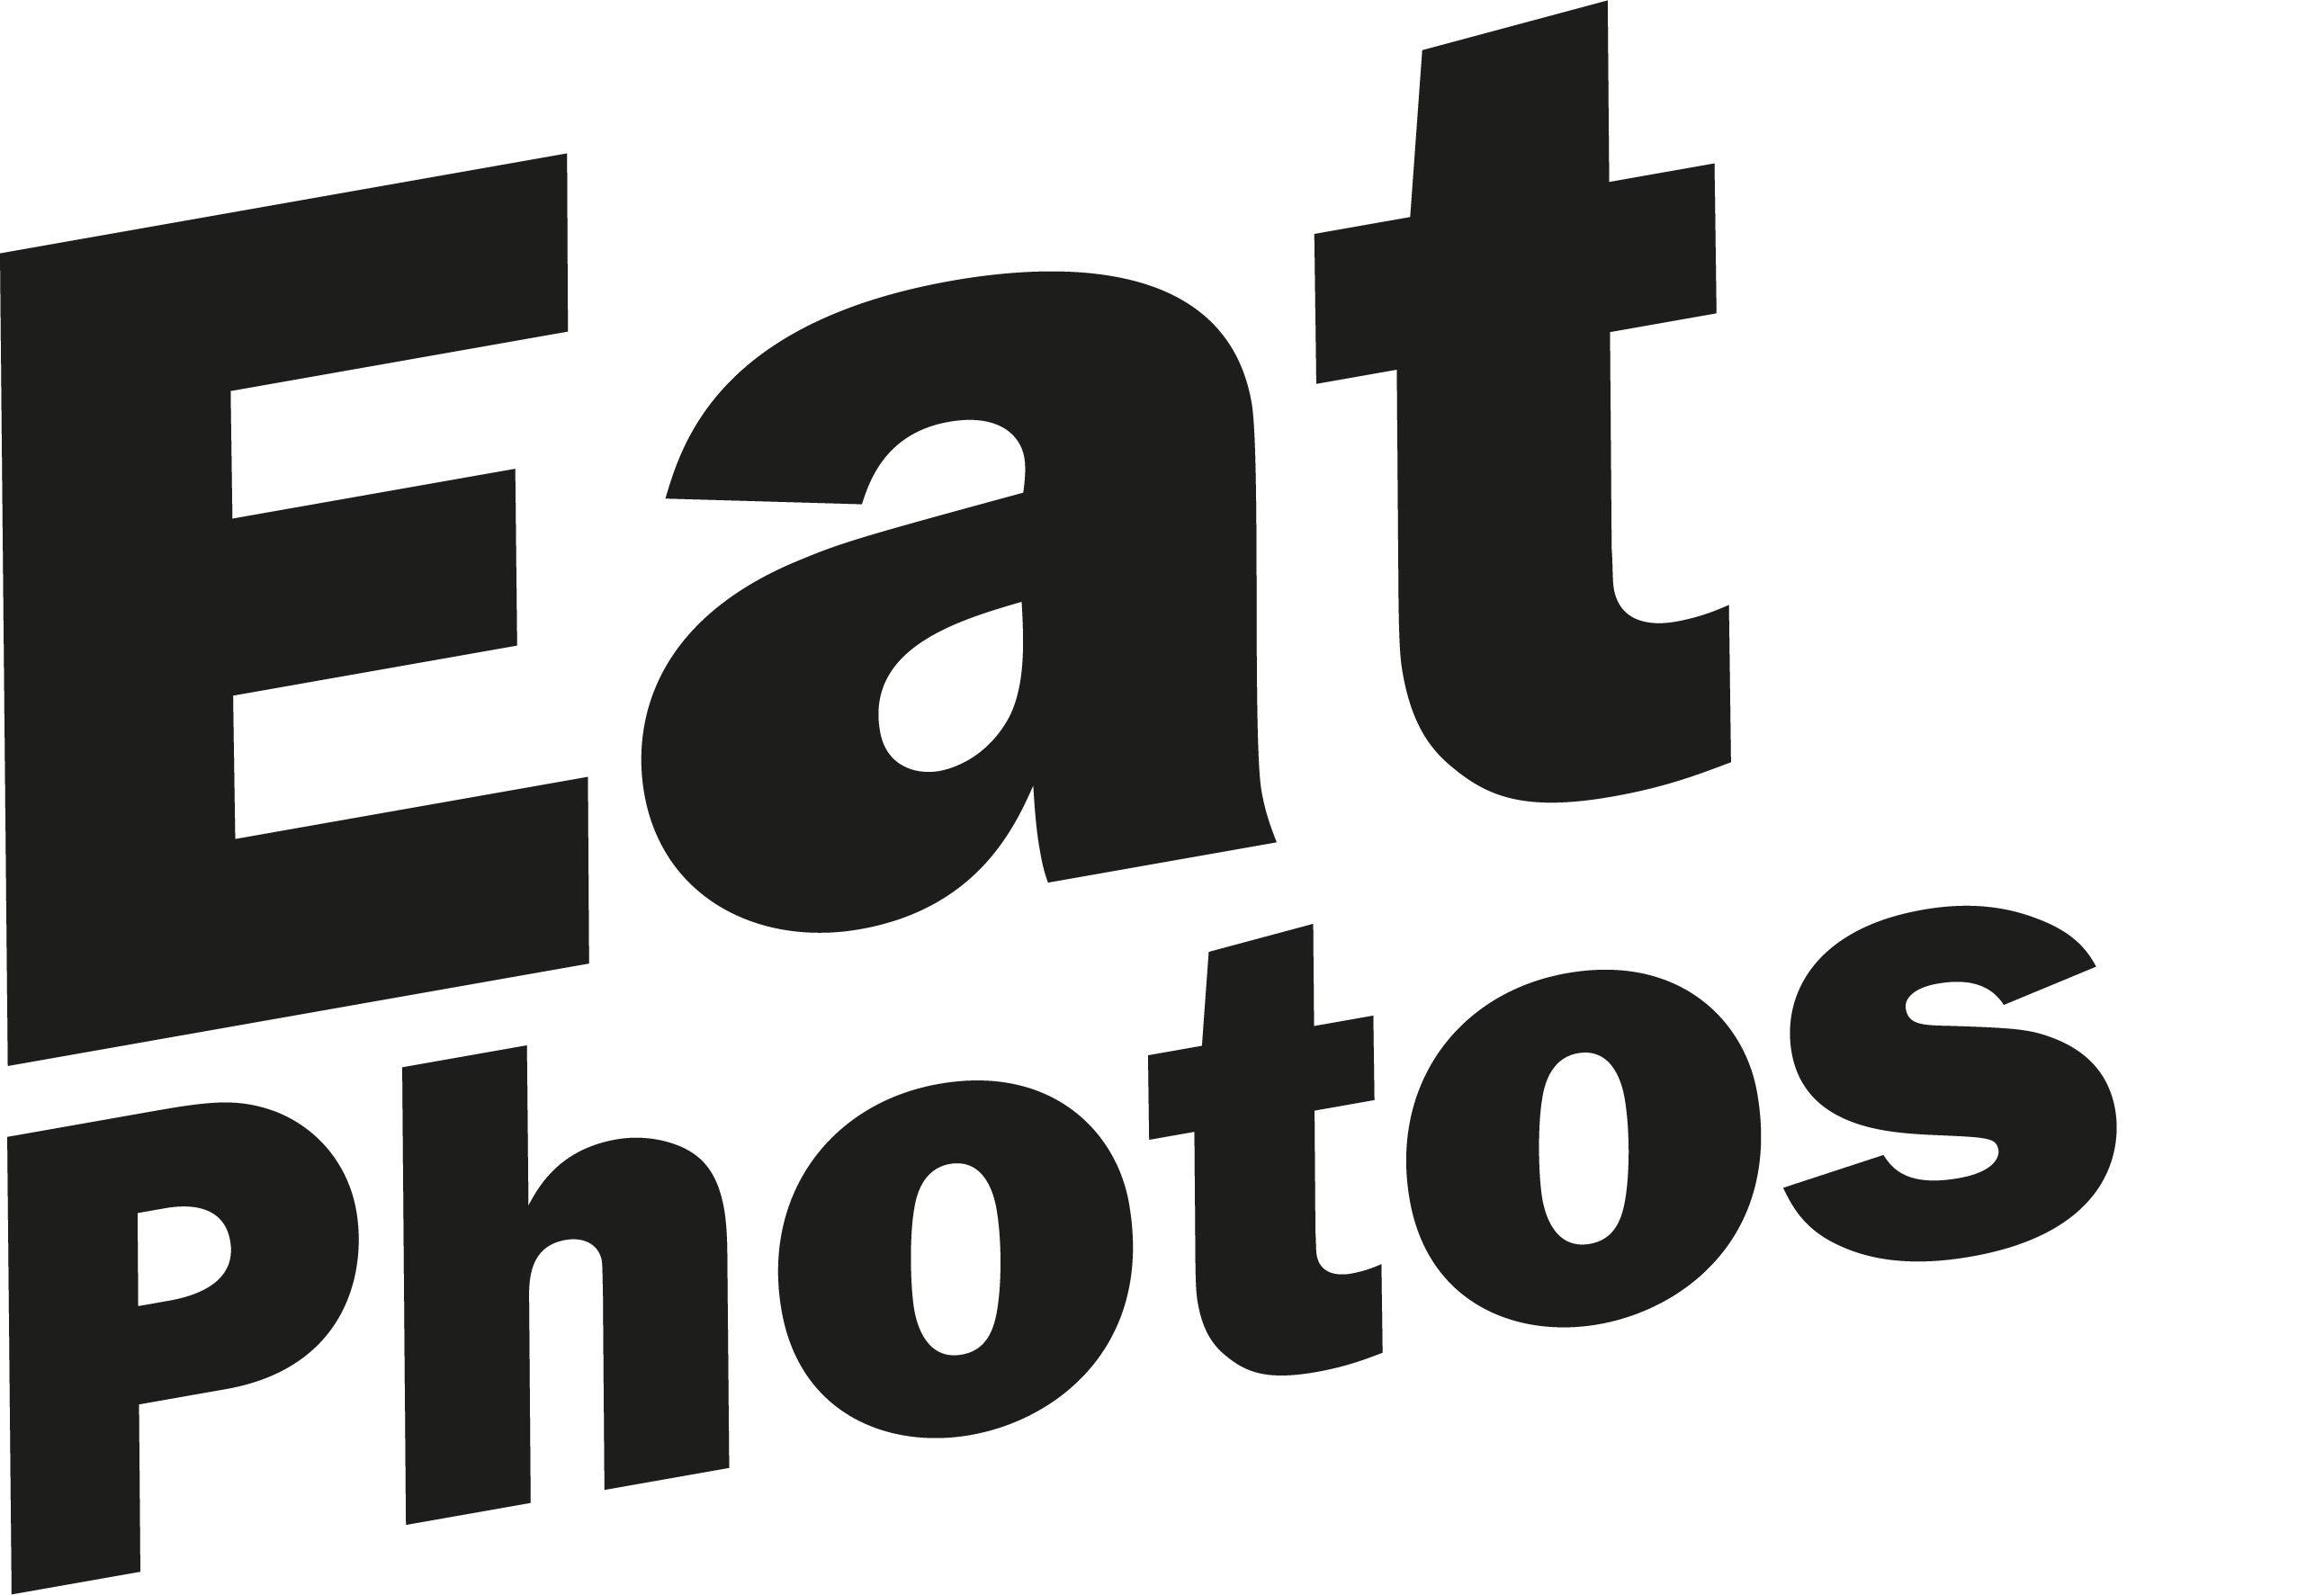 Eatphotos